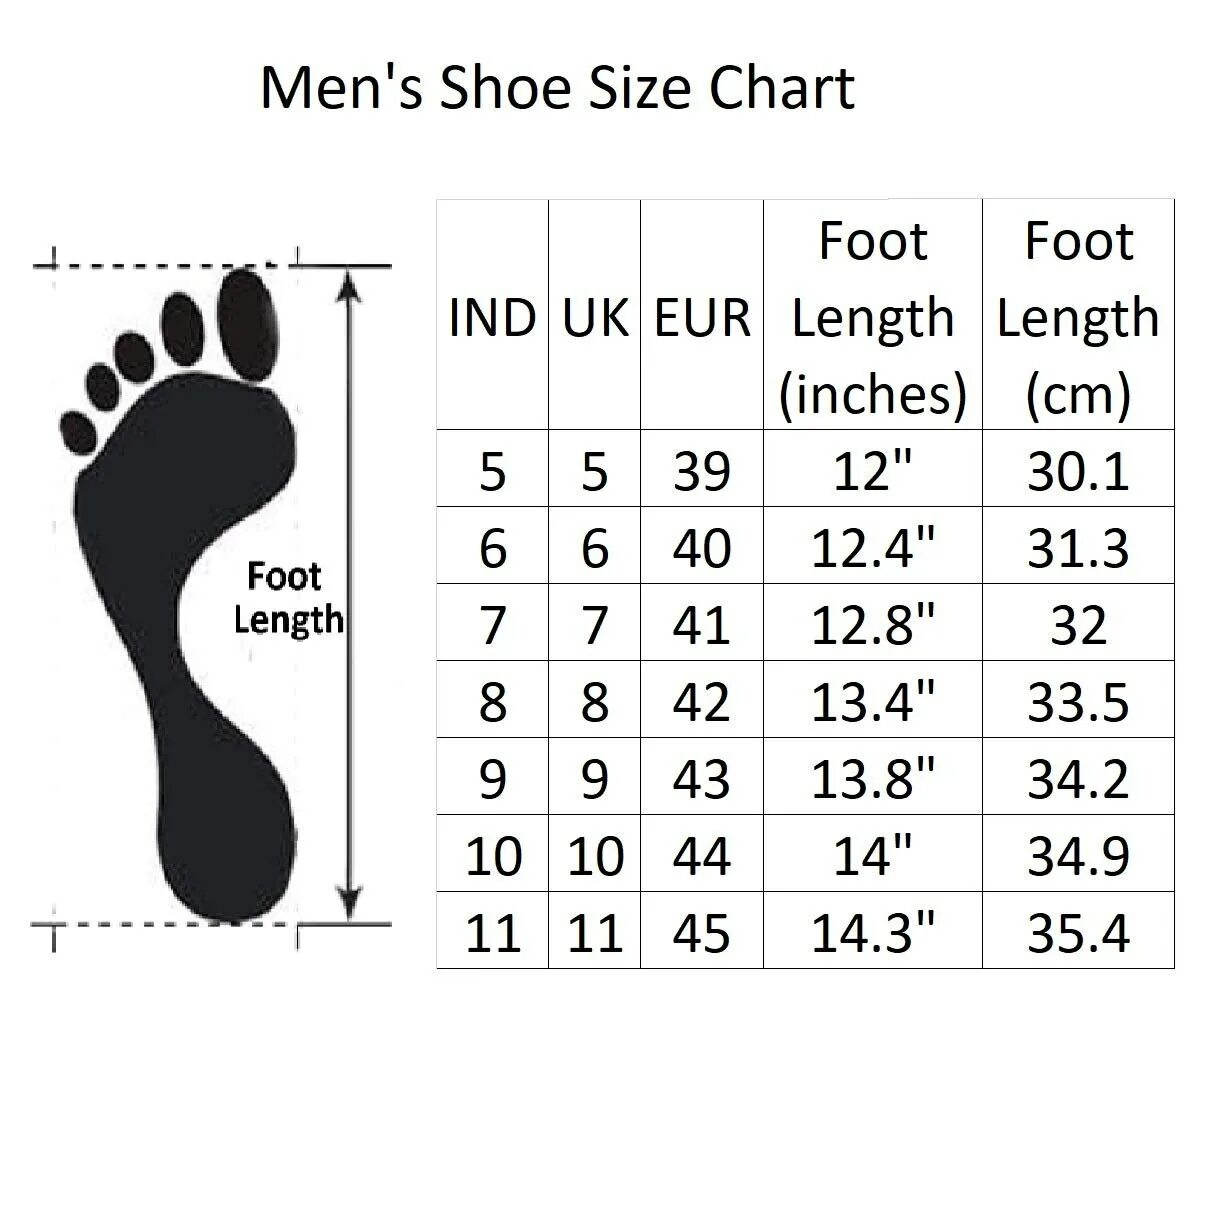 Size 6 uk обувь. Uk9 размер обуви Size Chart. Uk 6 размер обуви женской. Uk Size 9 обувь. 7 uk размер